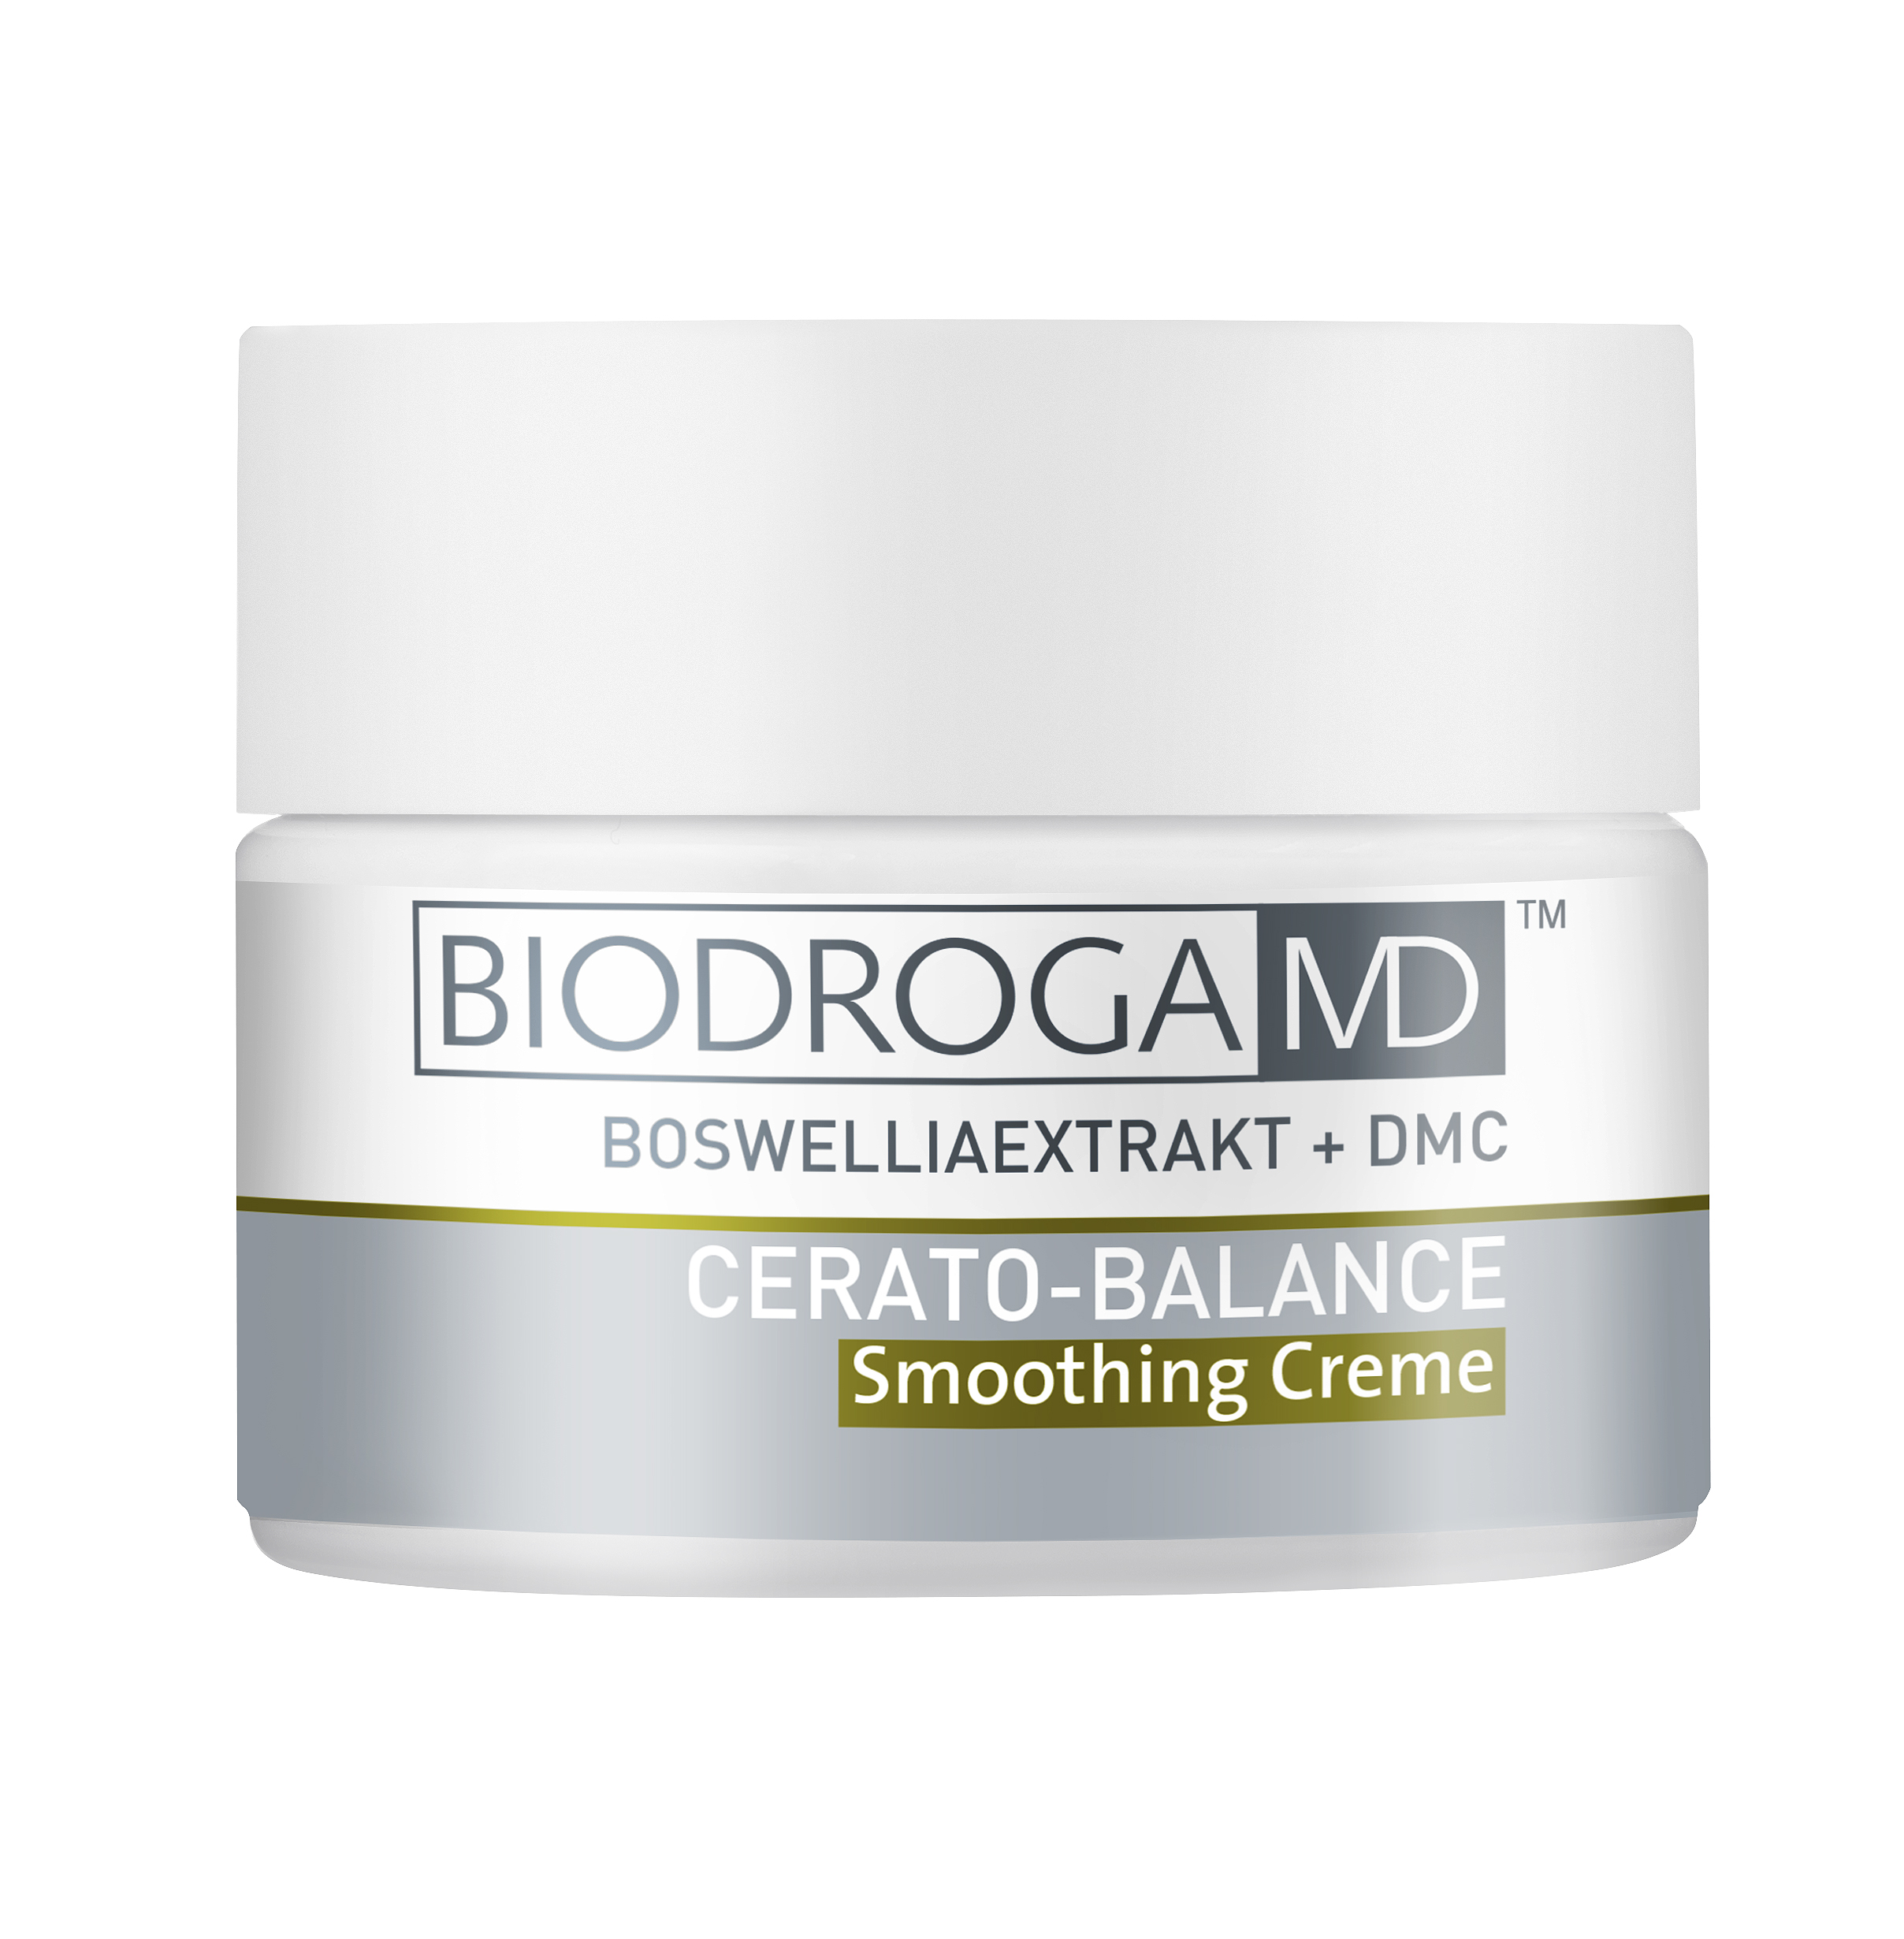 Biodroga MD Cerato-Balance Smoothing Creme 50ml